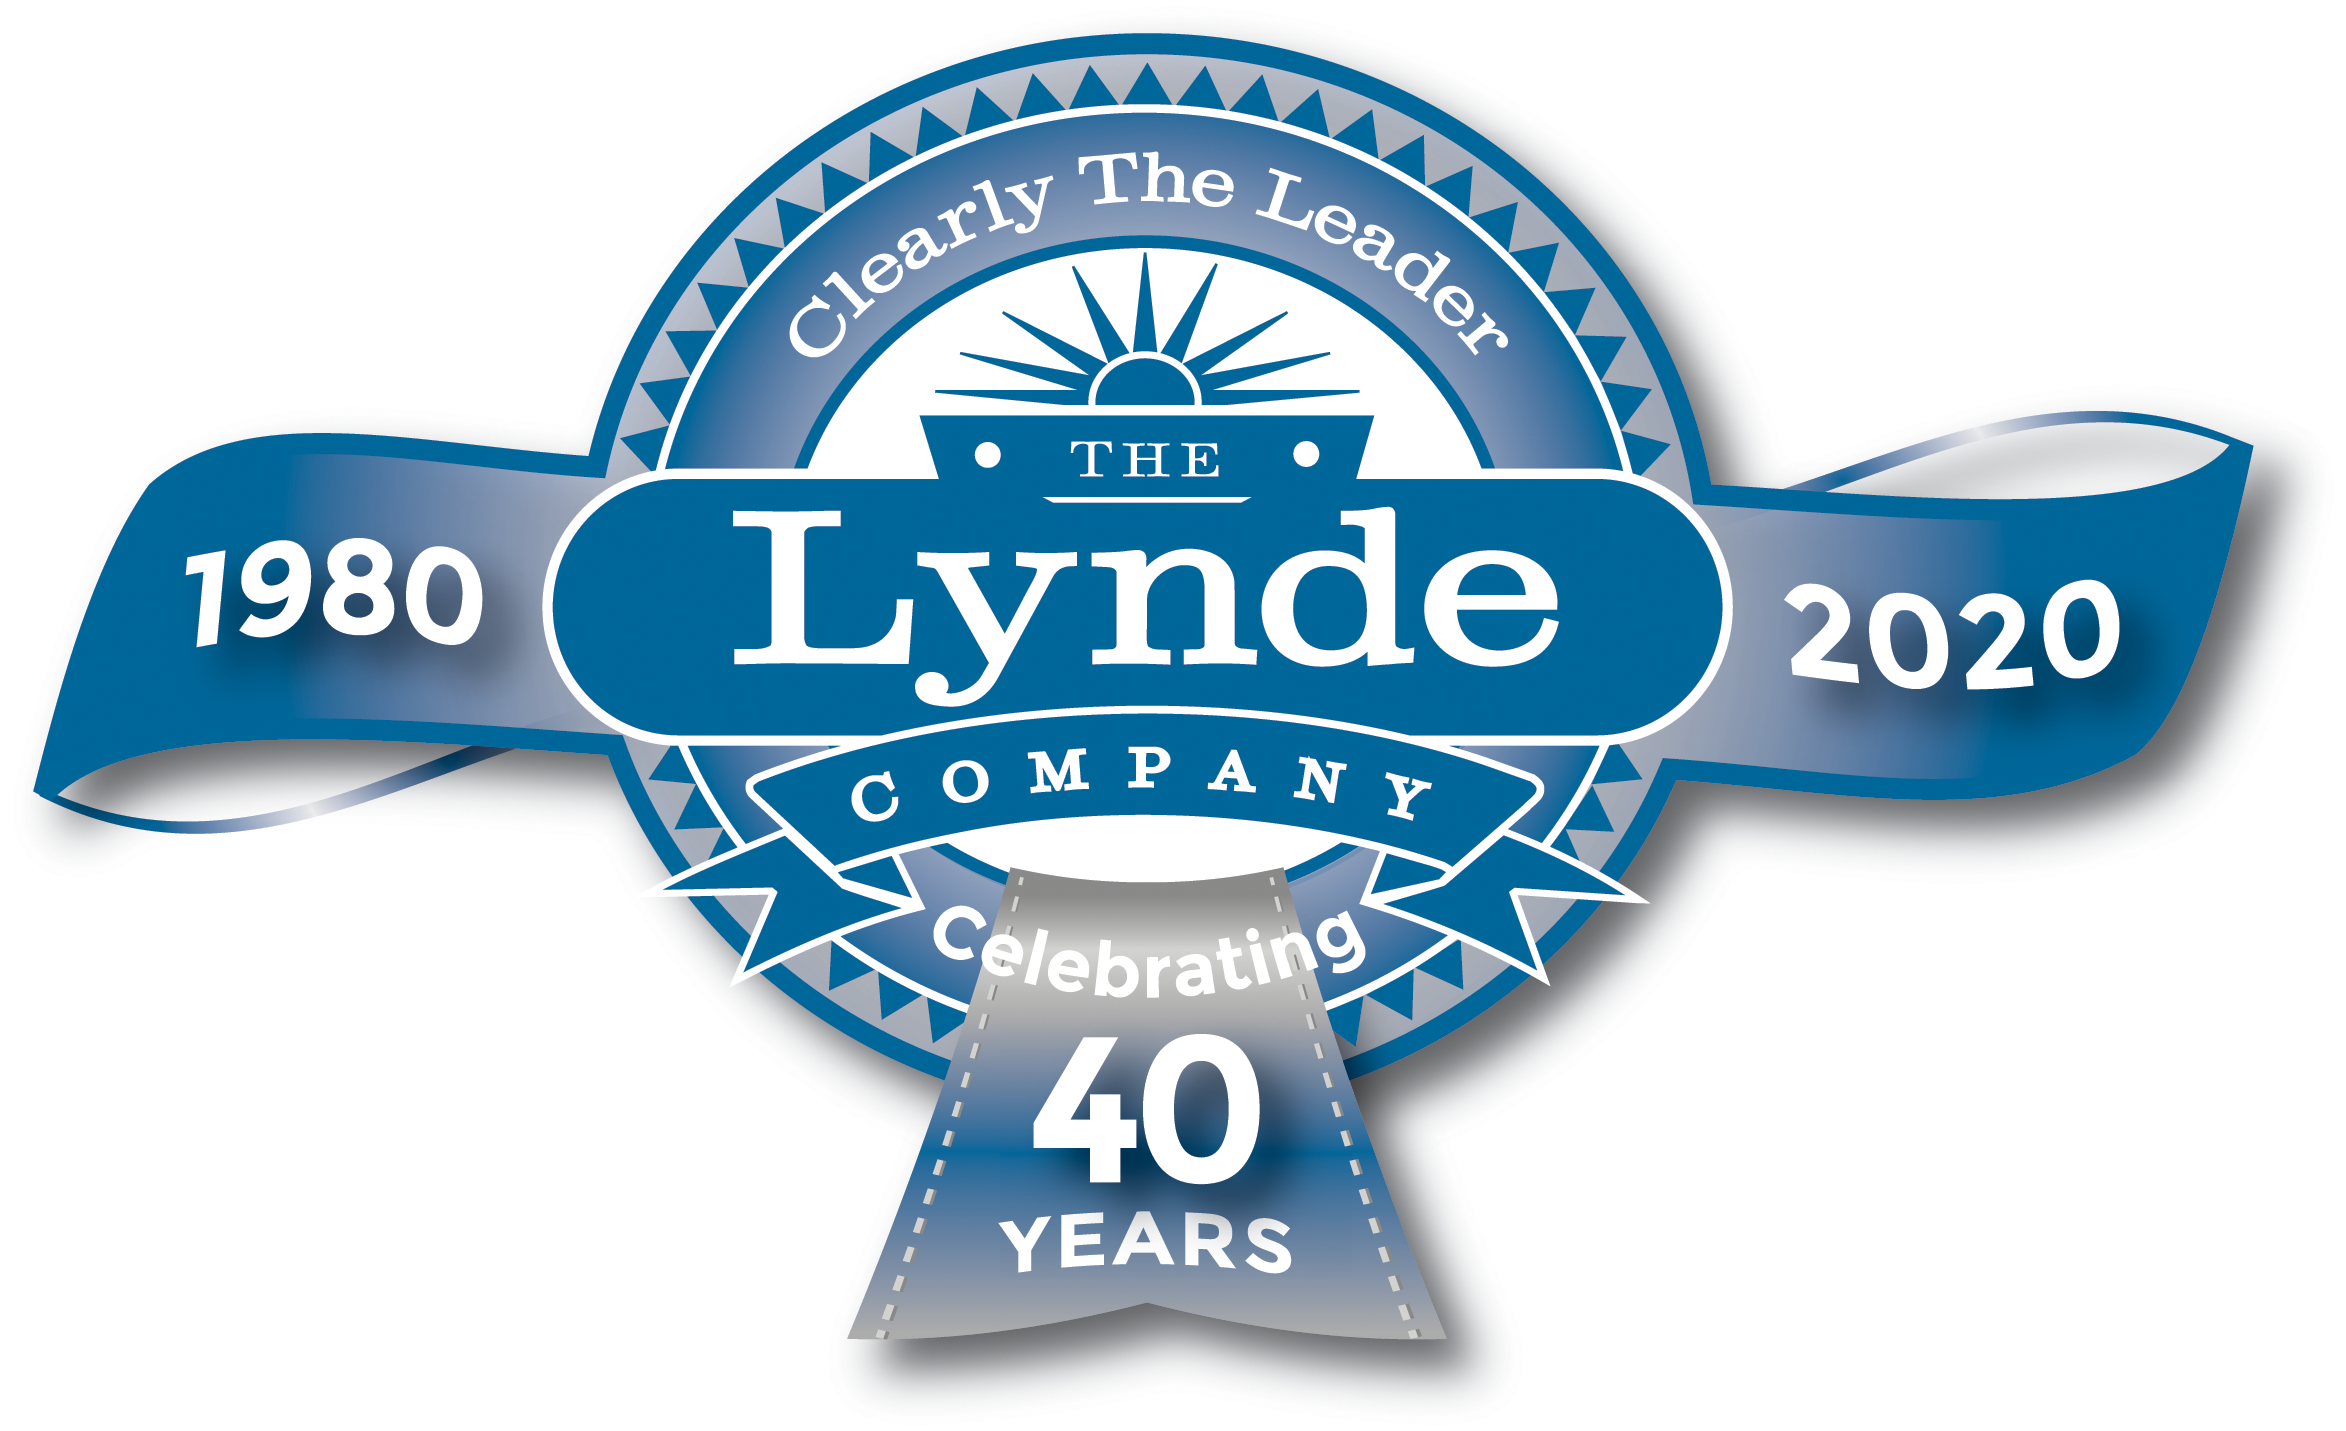 Lynde Company, LLC.